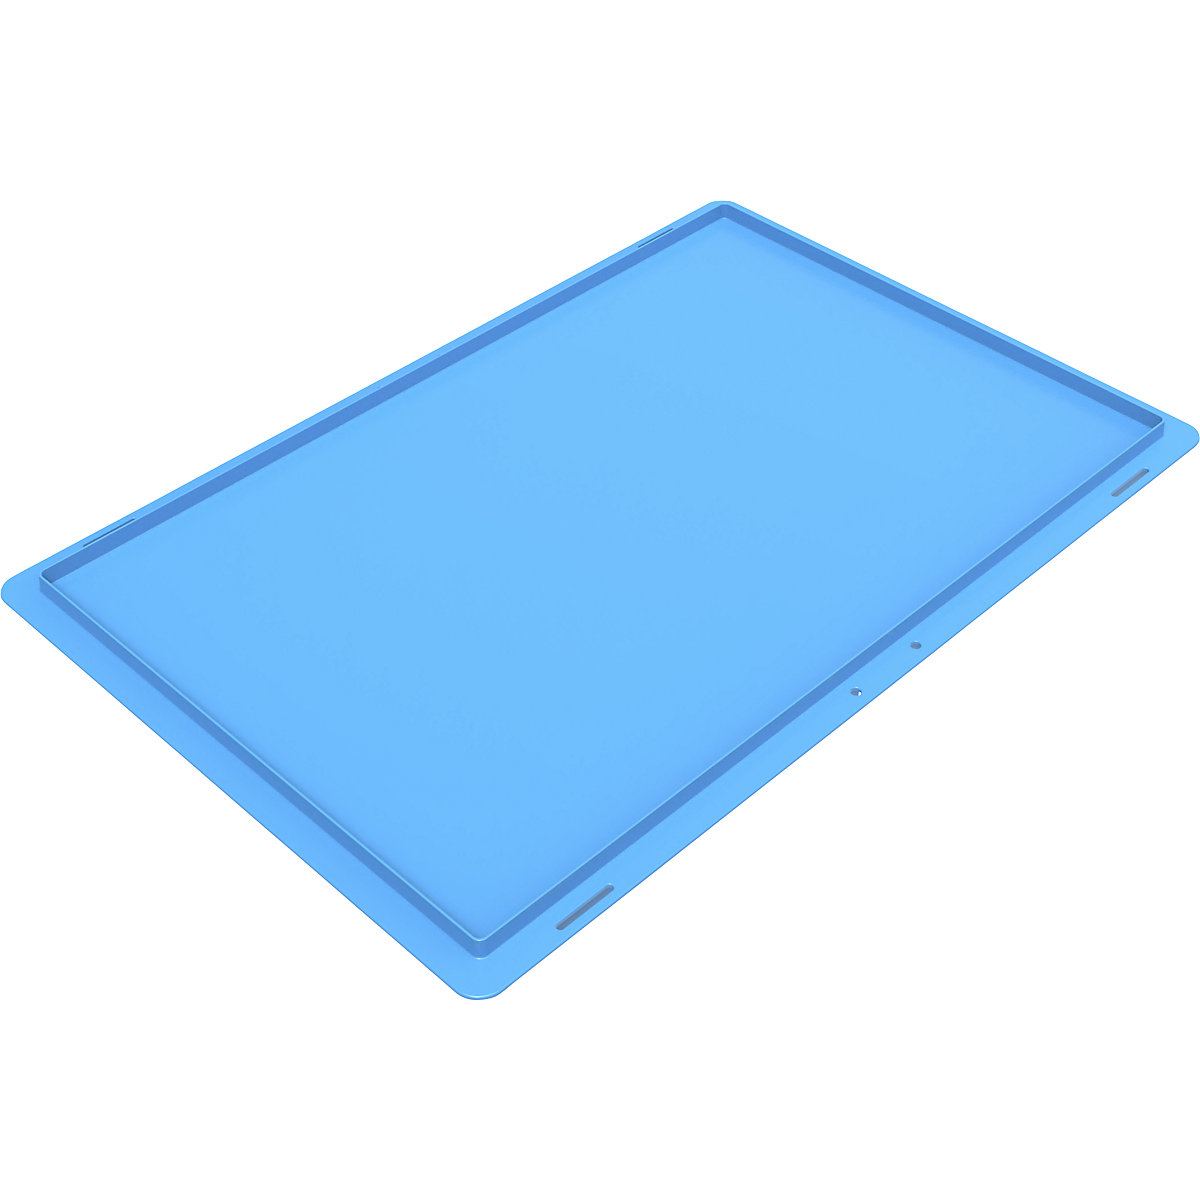 Poklopac za polaganje za sklopivu kutiju, u plavoj boji (Prikaz proizvoda 2)-1